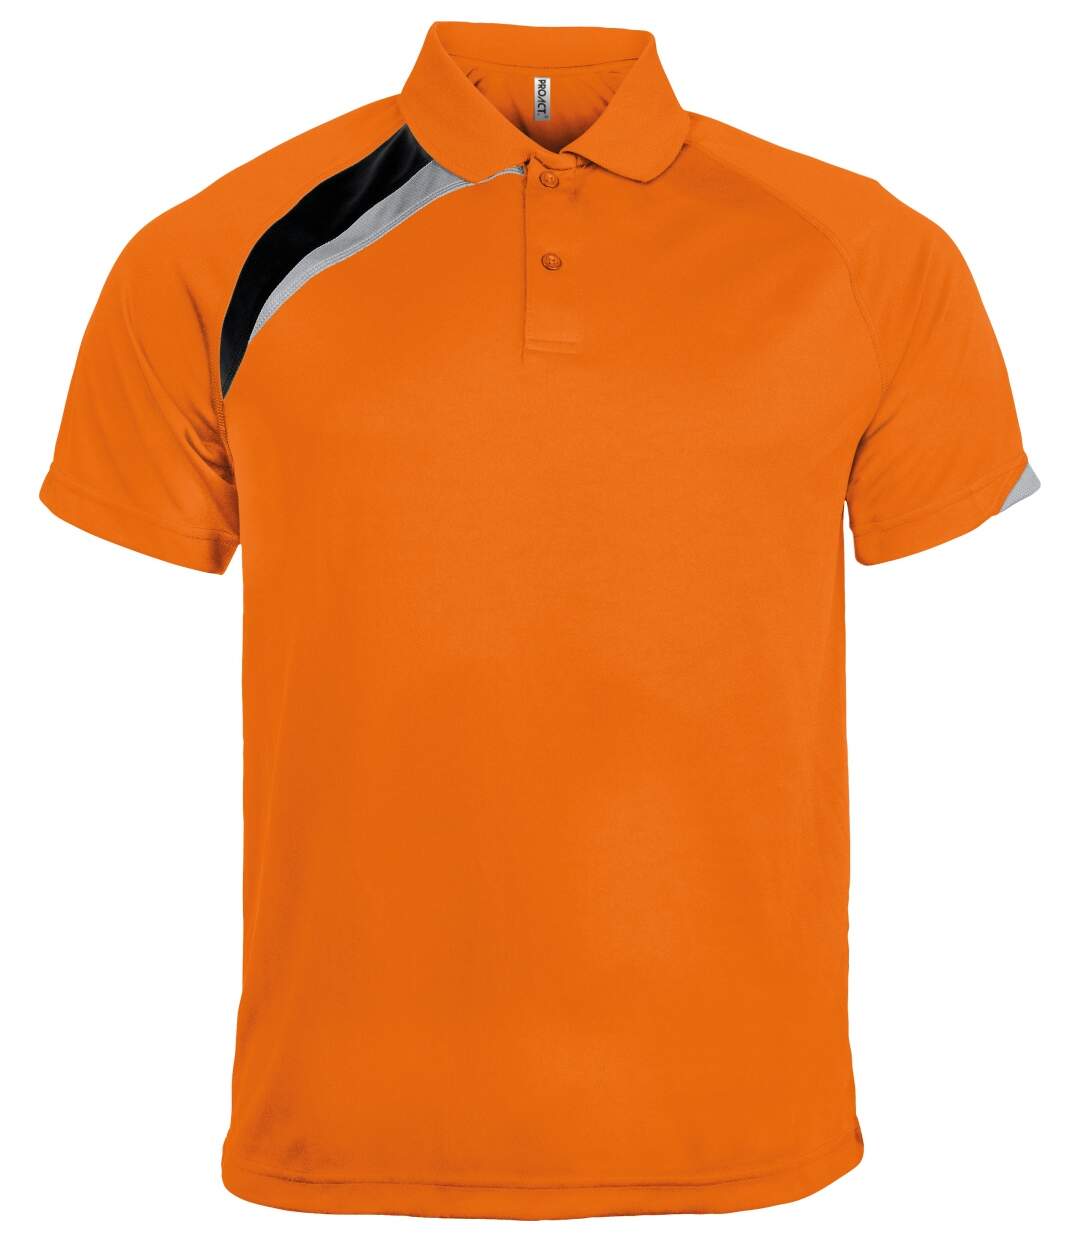 Polo unisexe - PA457 - orange - manches courtes